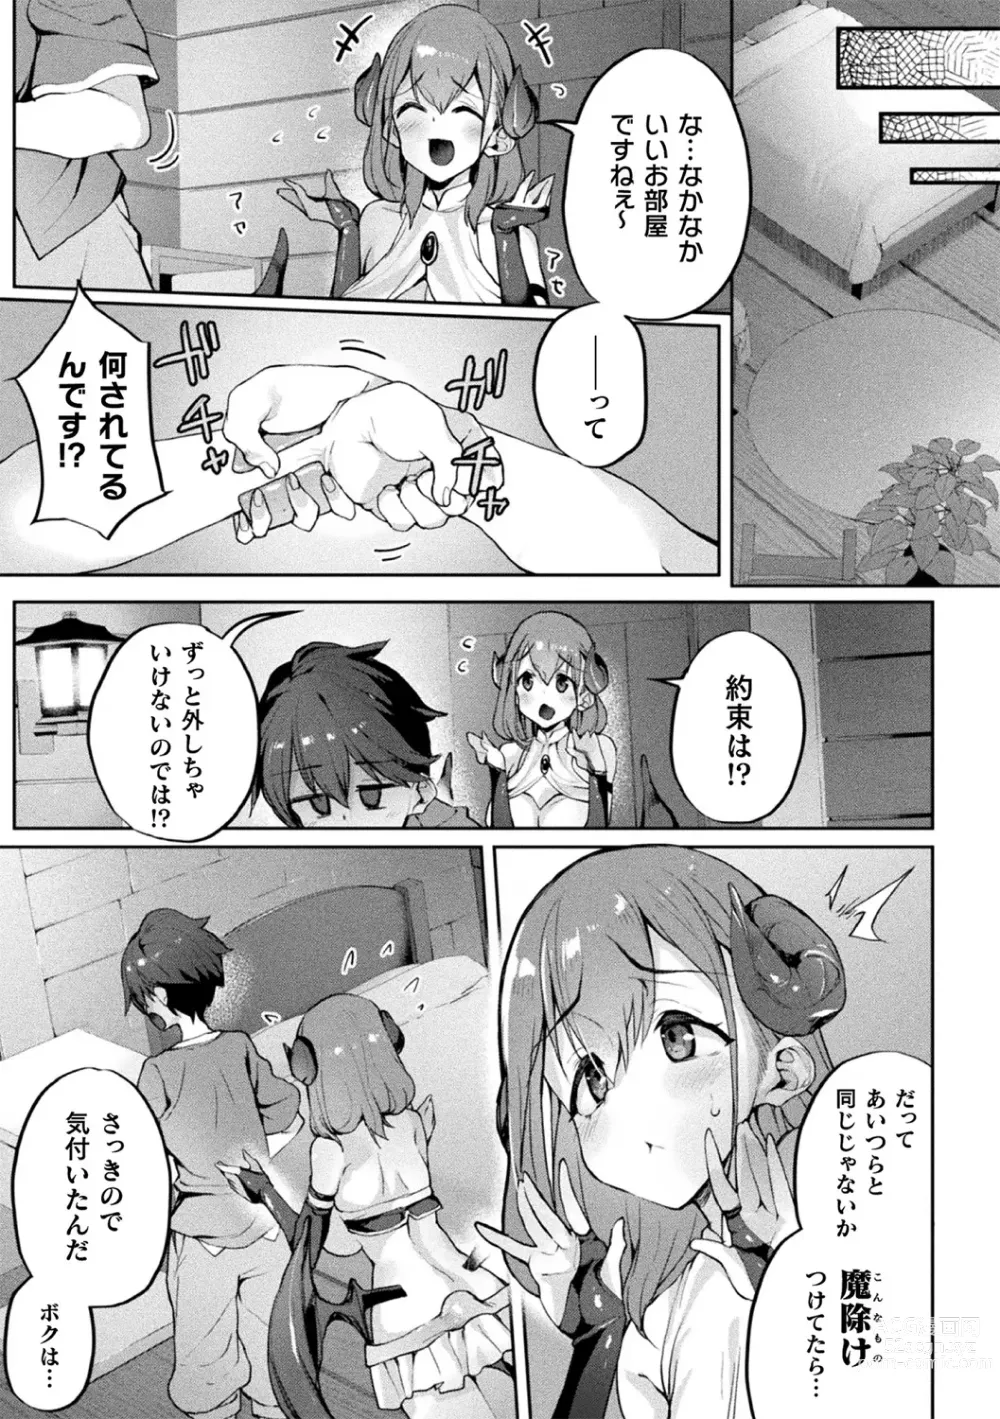 Page 9 of manga Bessatsu Comic Unreal Jingai Onee-san ni Yoru Amayakashi Sakusei Hen Vol. 3